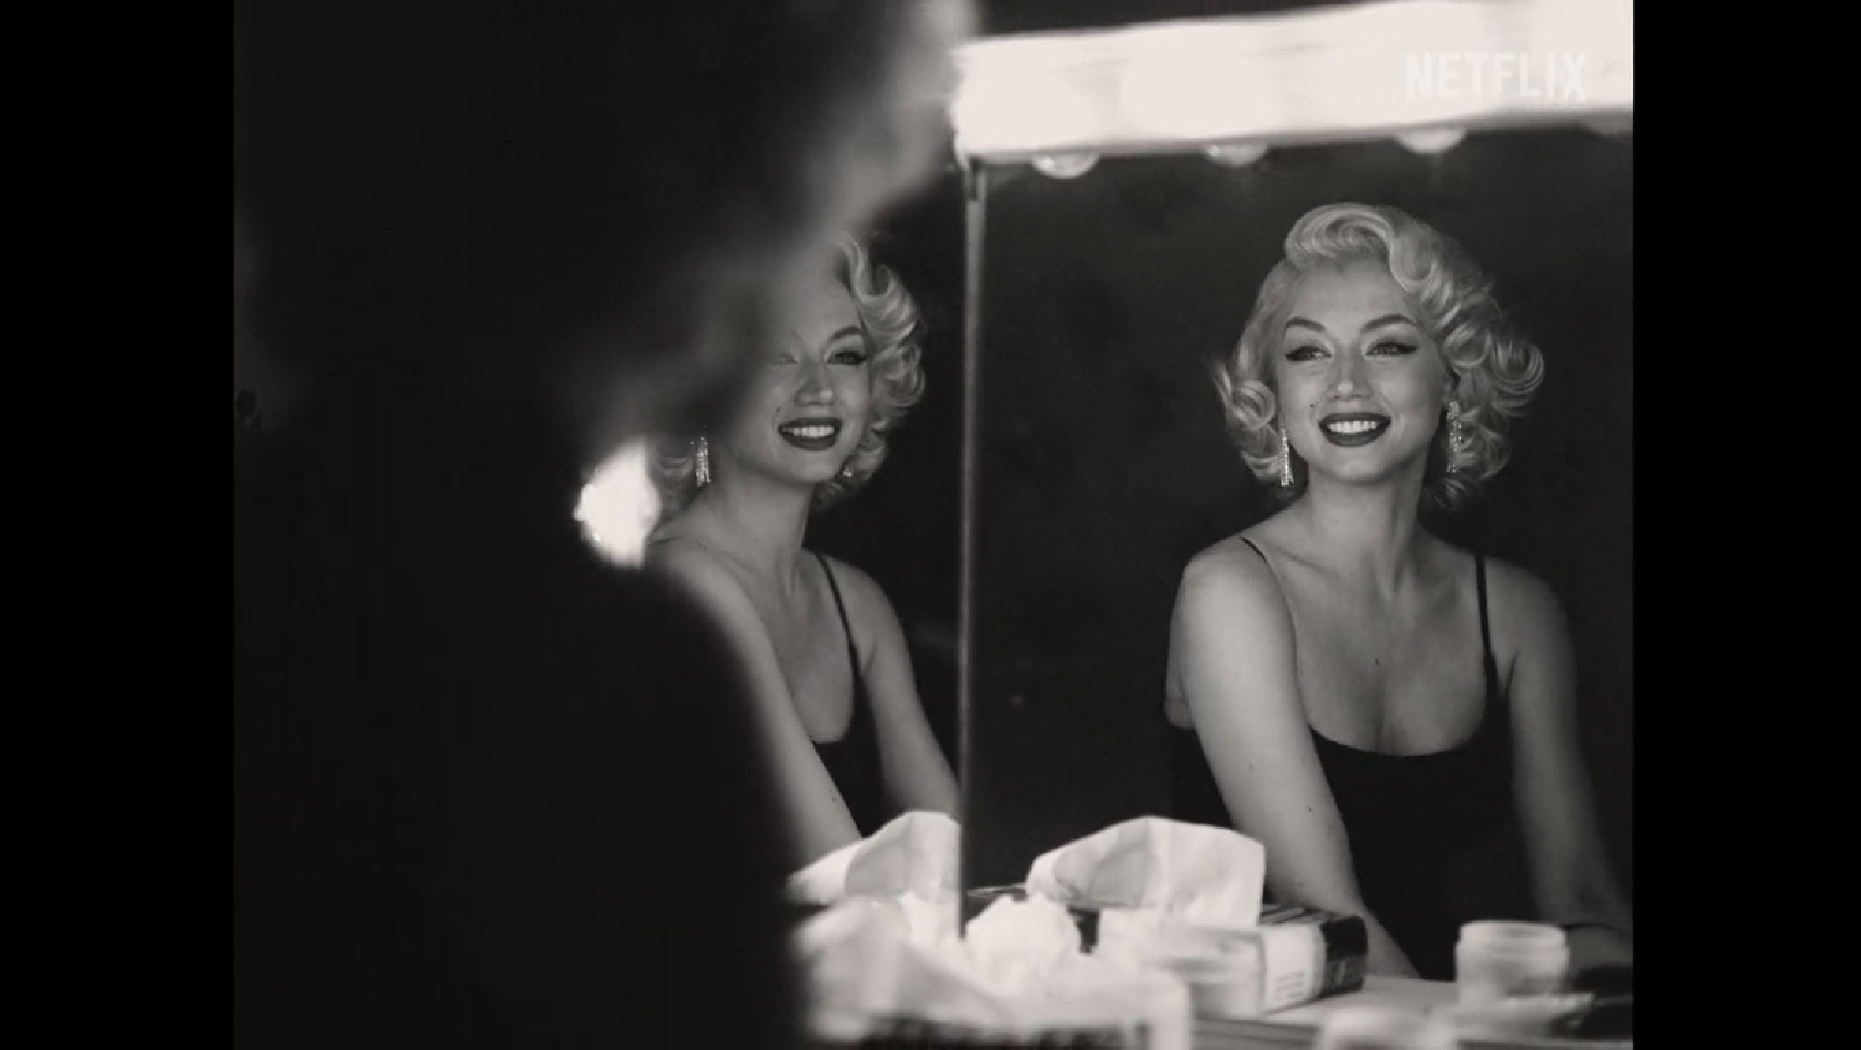 Netflix Blonde based on Marilyn Monroe, will be released in September